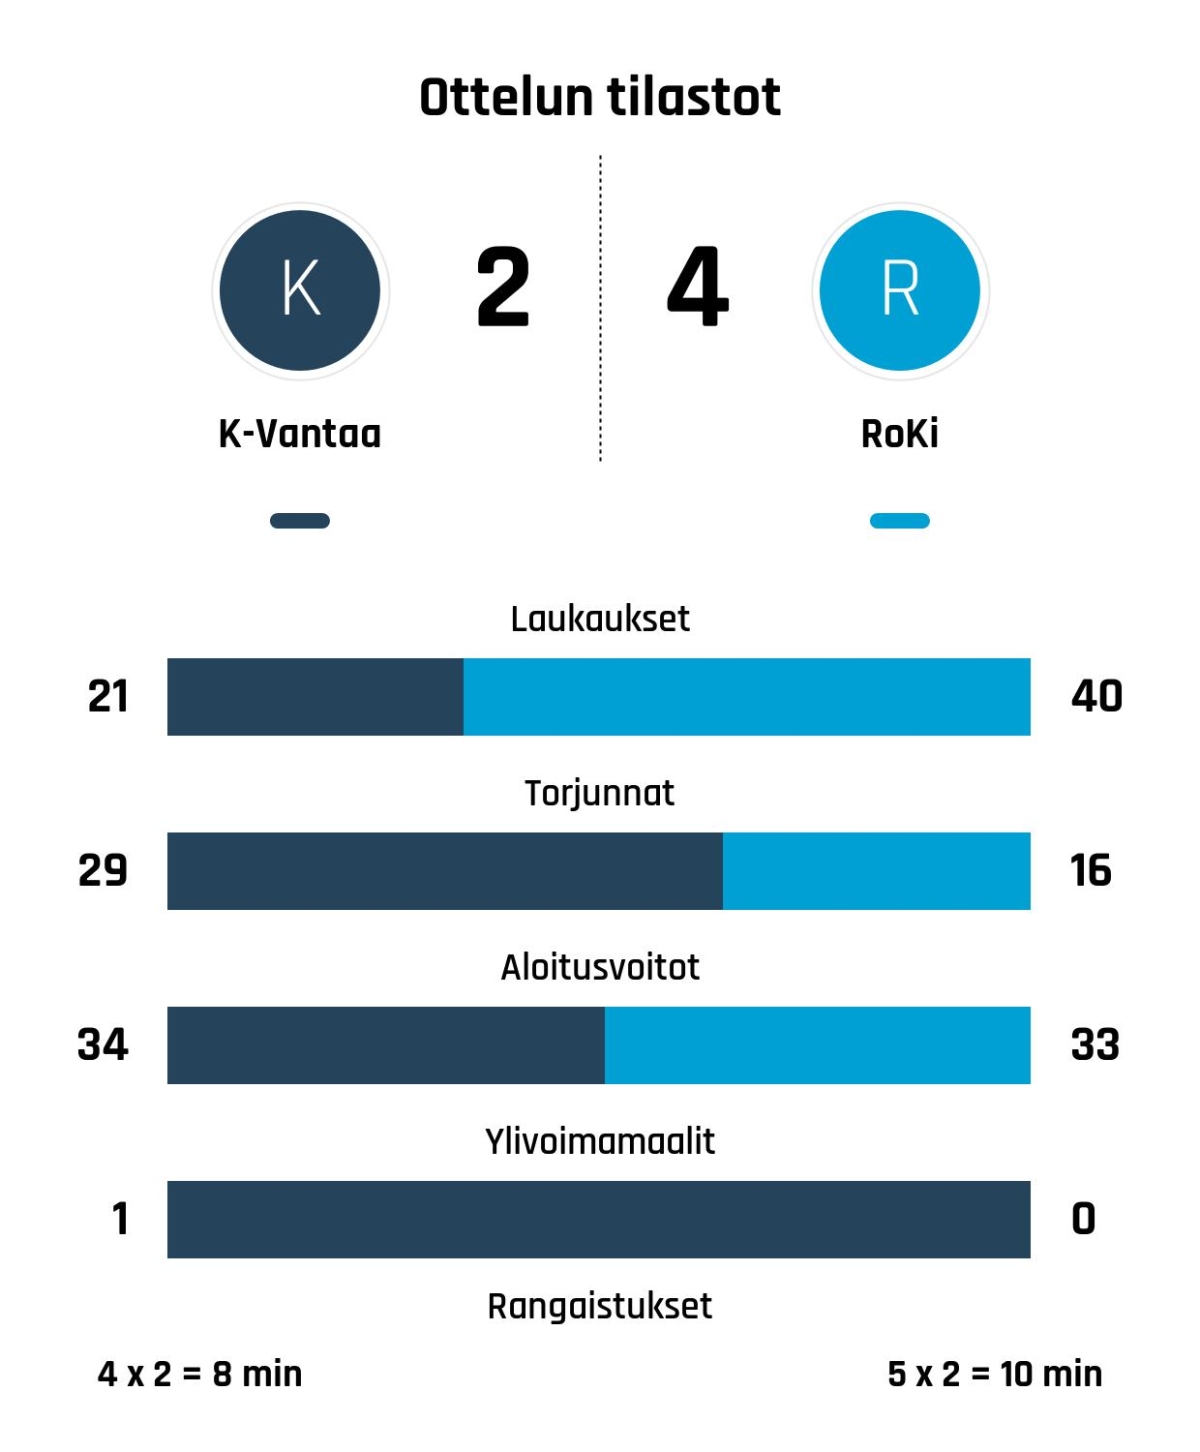 RoKi nousi rinnalle ja ohi – K-Vantaa kaatui 4-2